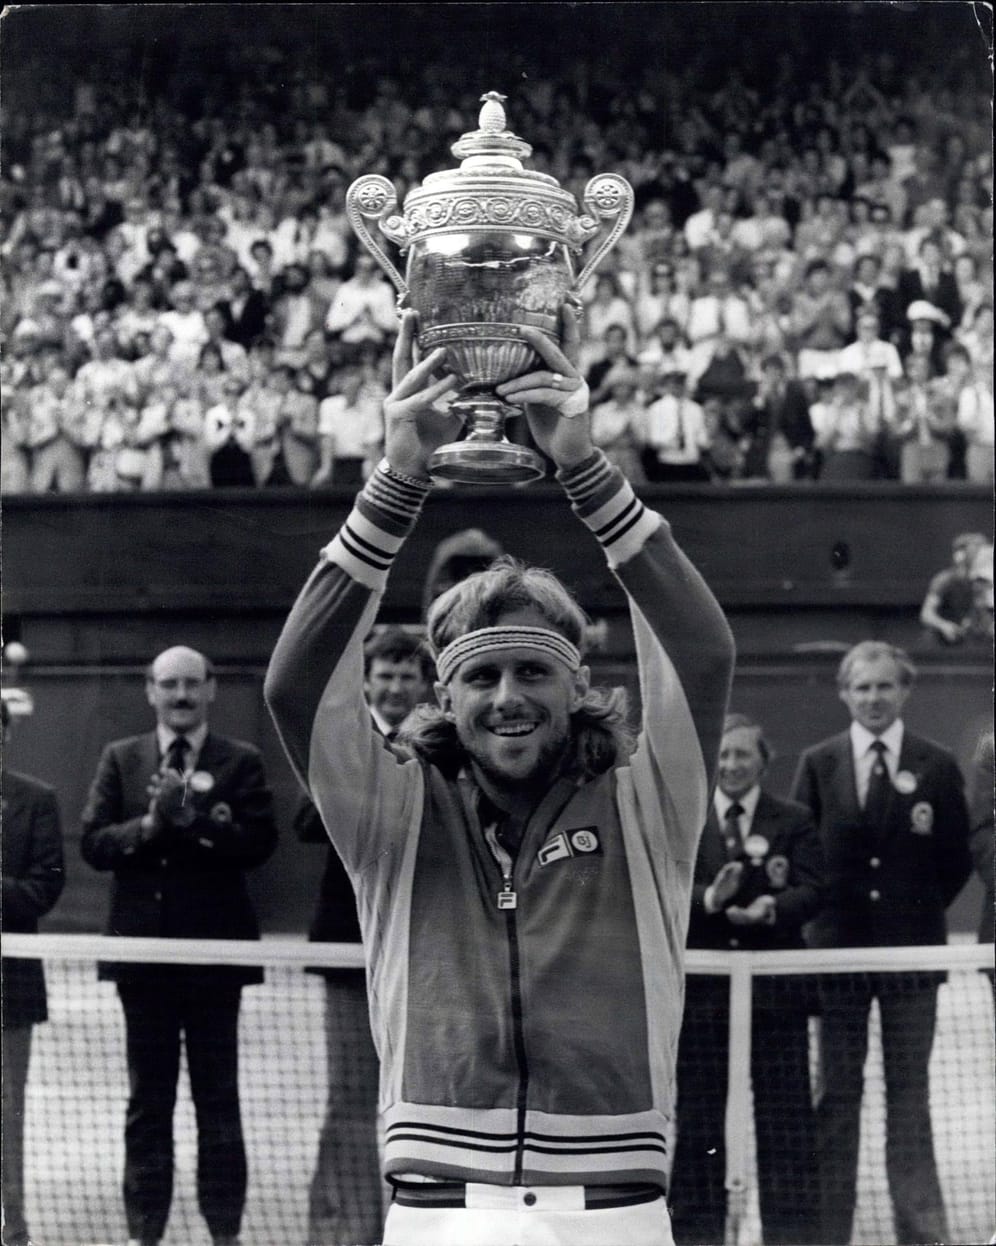 Borg, Borg, Borg, Borg: Die Wimbledonsieger 1976 bis 1980 waren keine abwechslungsreiche Angelegenheit. In dieser Zeit dominierte Björn Borg den Tennissport. Nach einer Finalniederlage gegen John McEnroe 1981 entschloss sich der Schwede zu einer Tennis-Auszeit. Als er danach wieder antreten wollte, erklärten ihm die Funktionäre, dass er künftig die Qualifikationsrunden spielen müsse. Borg wollte das nicht und beendete seine Karriere – spätere Comeback-Versuche scheiterten eher kläglich.